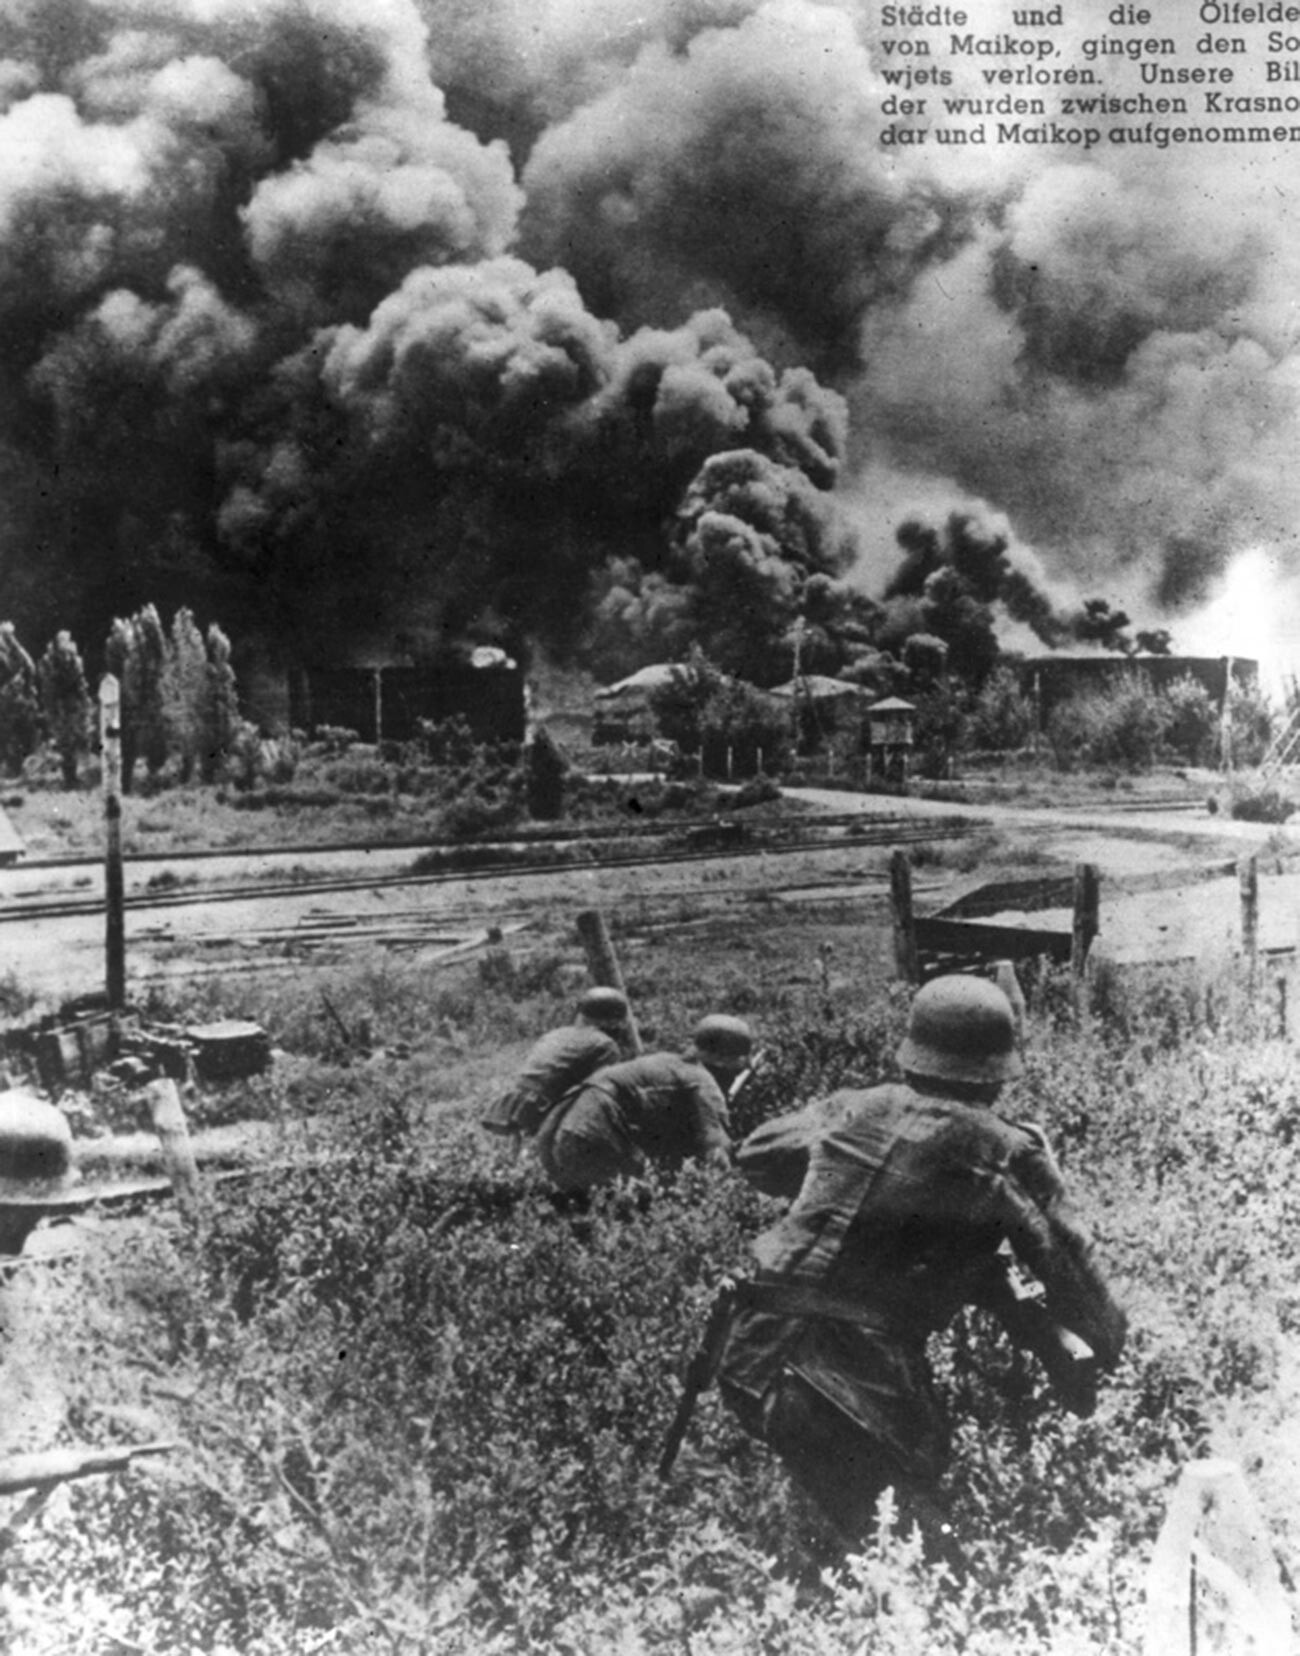 Nemški vojaki se približujejo gorečemu skladišču nafte v bližini Majkopa 